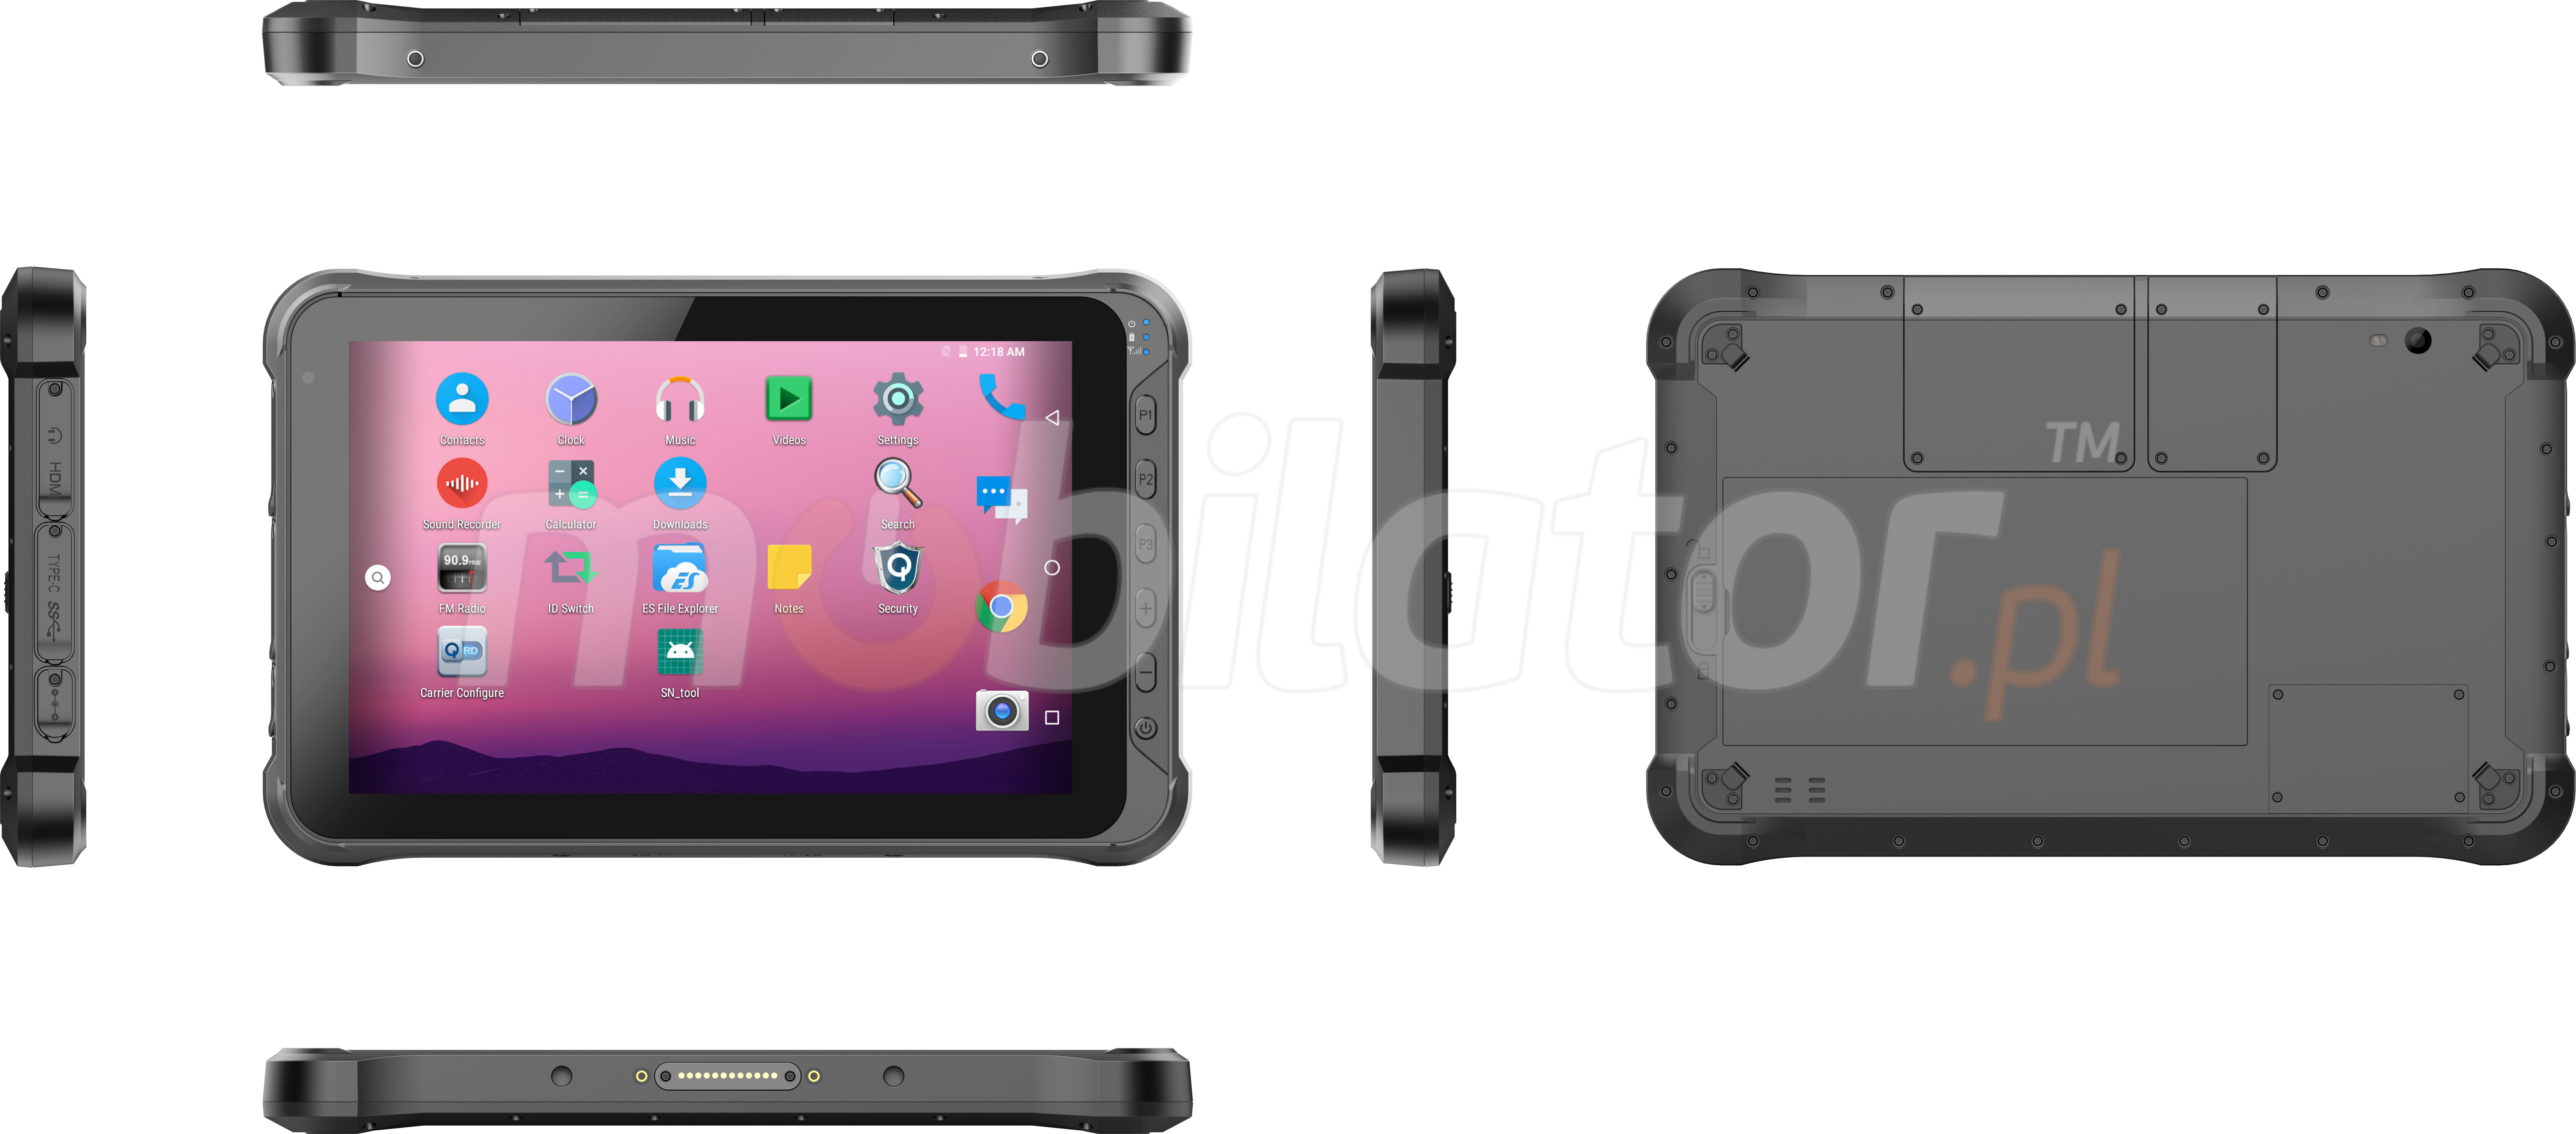 Emdoor Q15 v.3 - Odporny na upadki dziesiciocalowy tablet z Bluetooth 4.1, 4GB RAM pamici, dyskiem 64GB, czytnikiem kodw 2D N3680 Honeywell, NFC  i 4G 